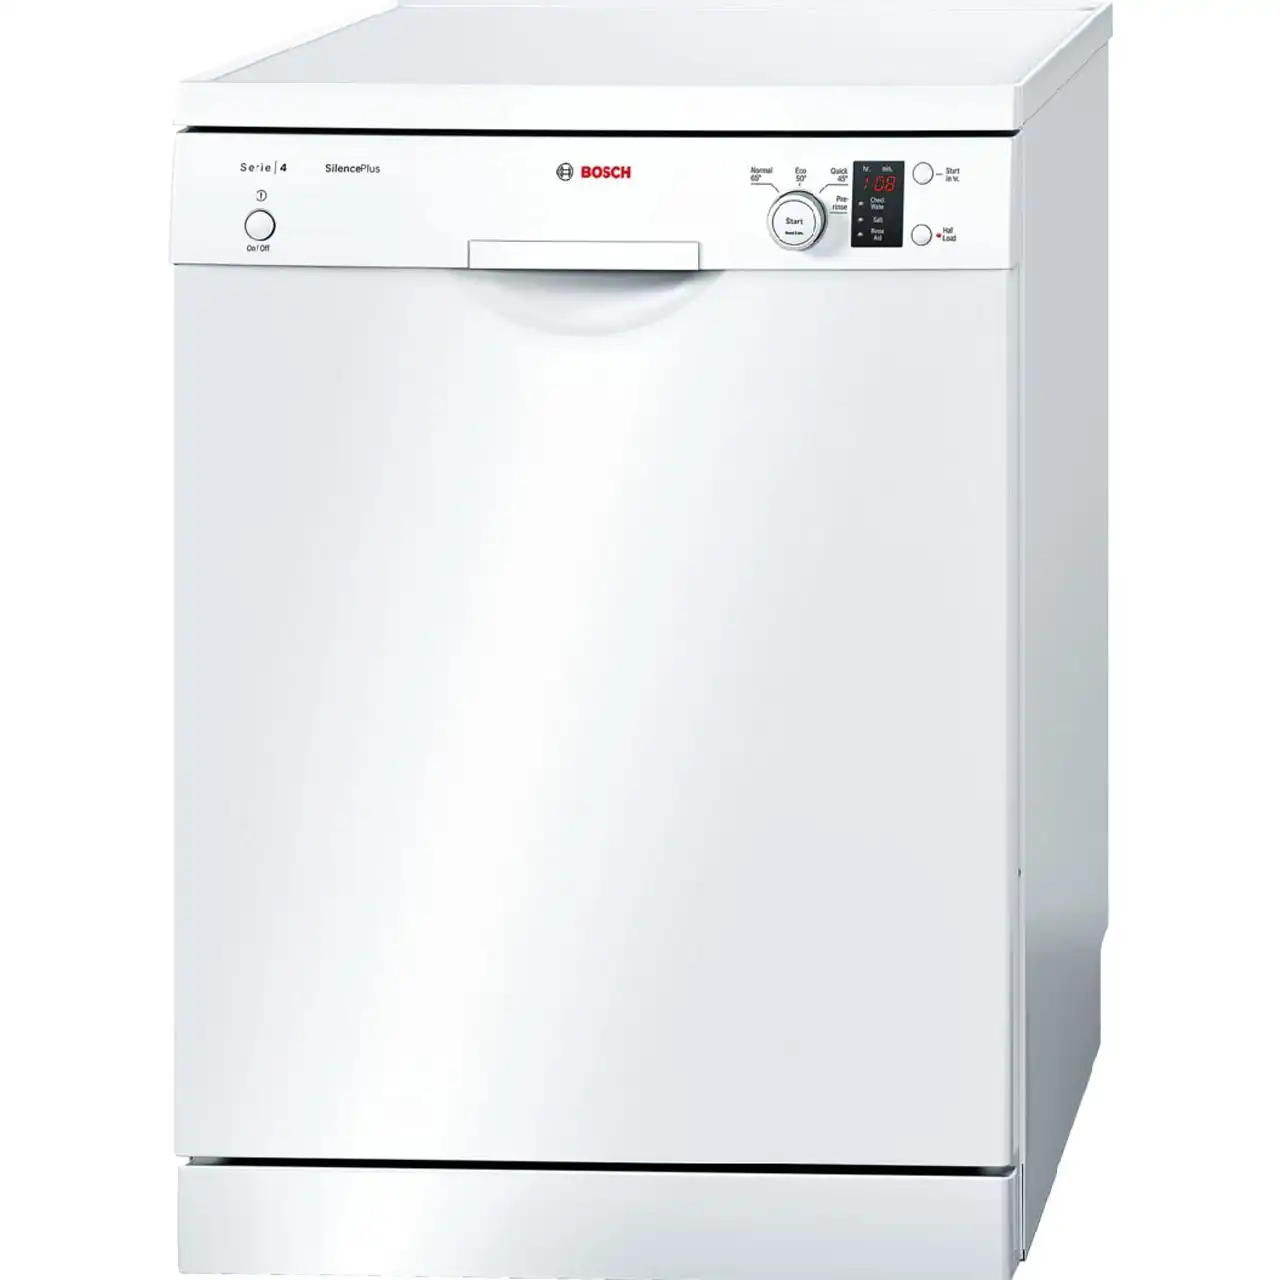  ماشین ظرفشویی بوش مدل SMS40C02IR / SMS40C08IR